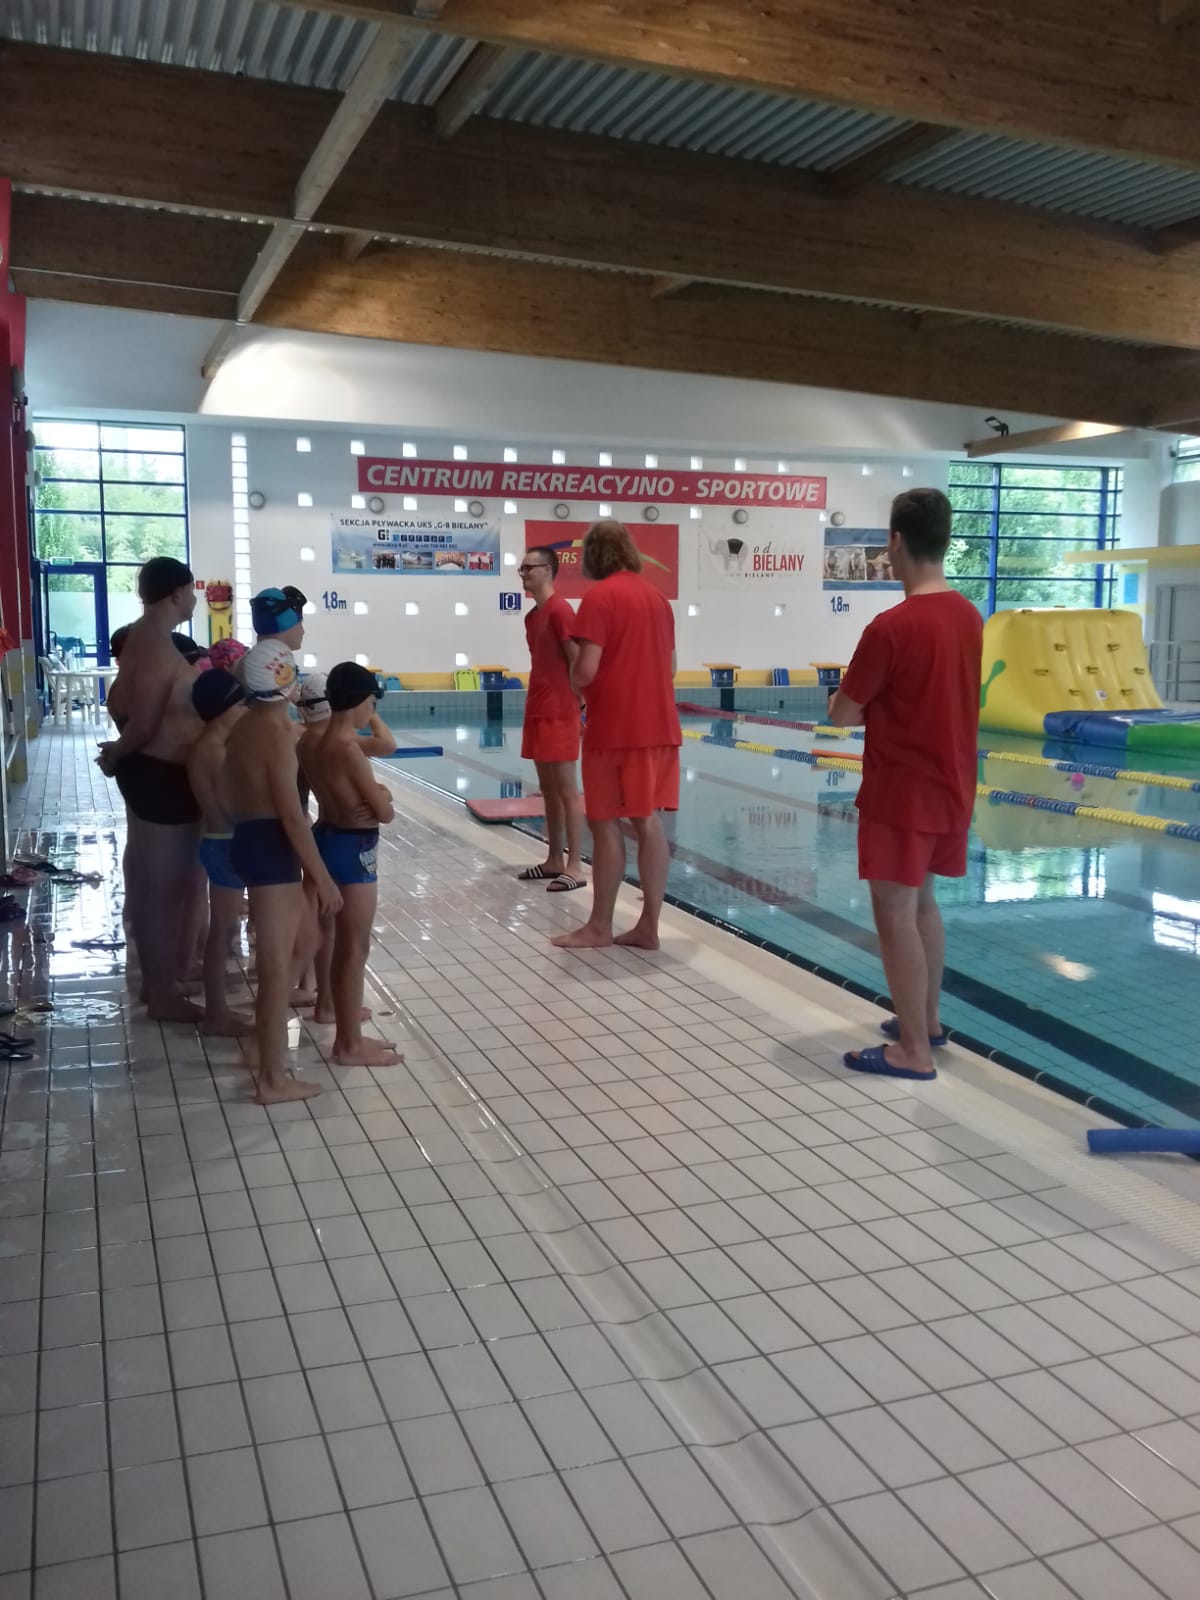 Grupa dzieci na pływalni słucha pogadanki na temat bezpieczeństwa.